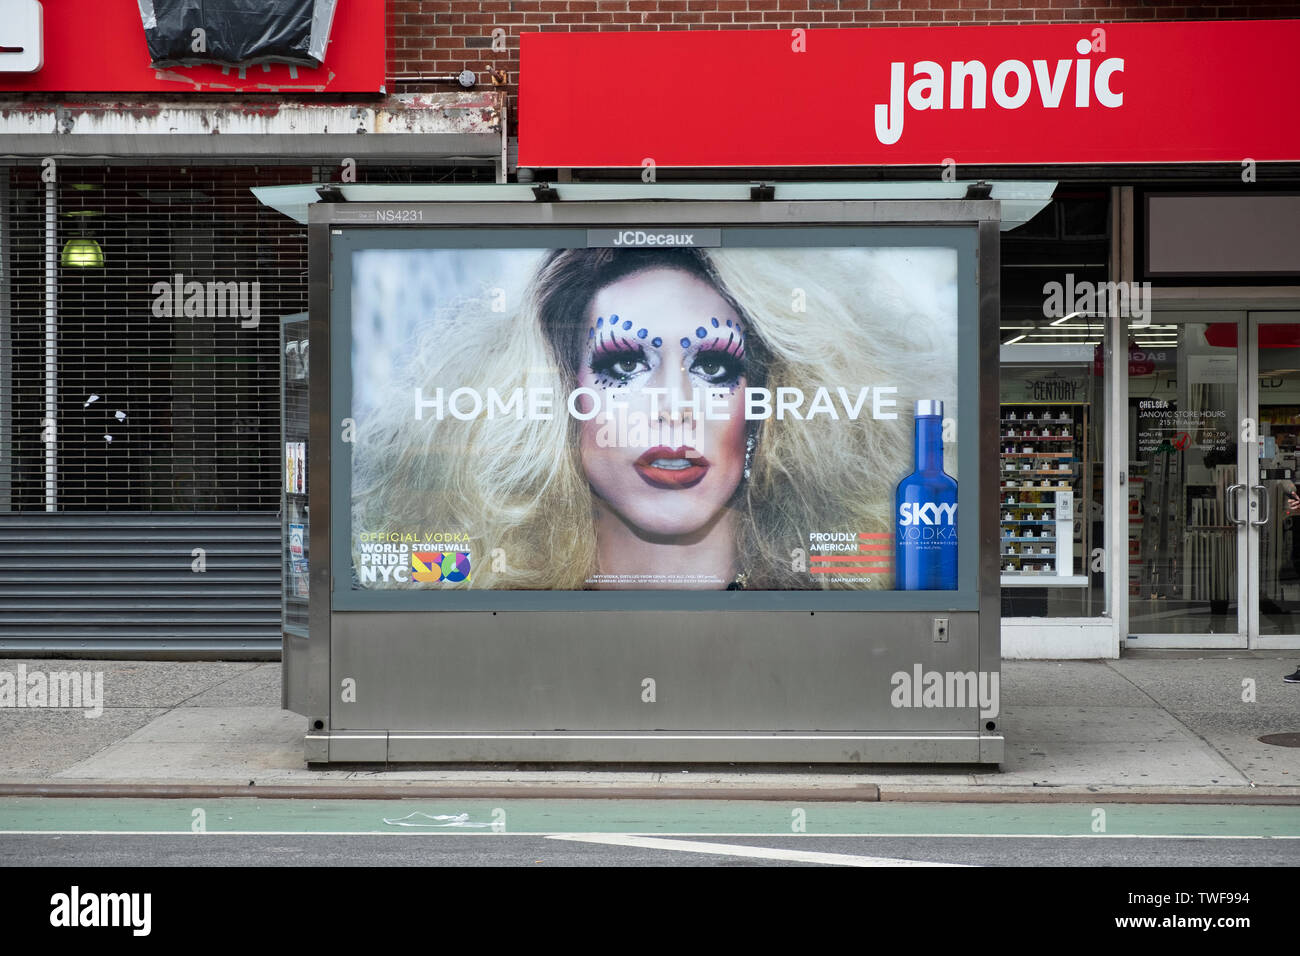 Ein Stolz Monat ad für Sky Wodka mit Drag Queen Trixie Mattel wie auf einem zeitungskiosk Kiosk an der 7th Avenue Avenue in Manhattan, New York City gesehen. Stockfoto